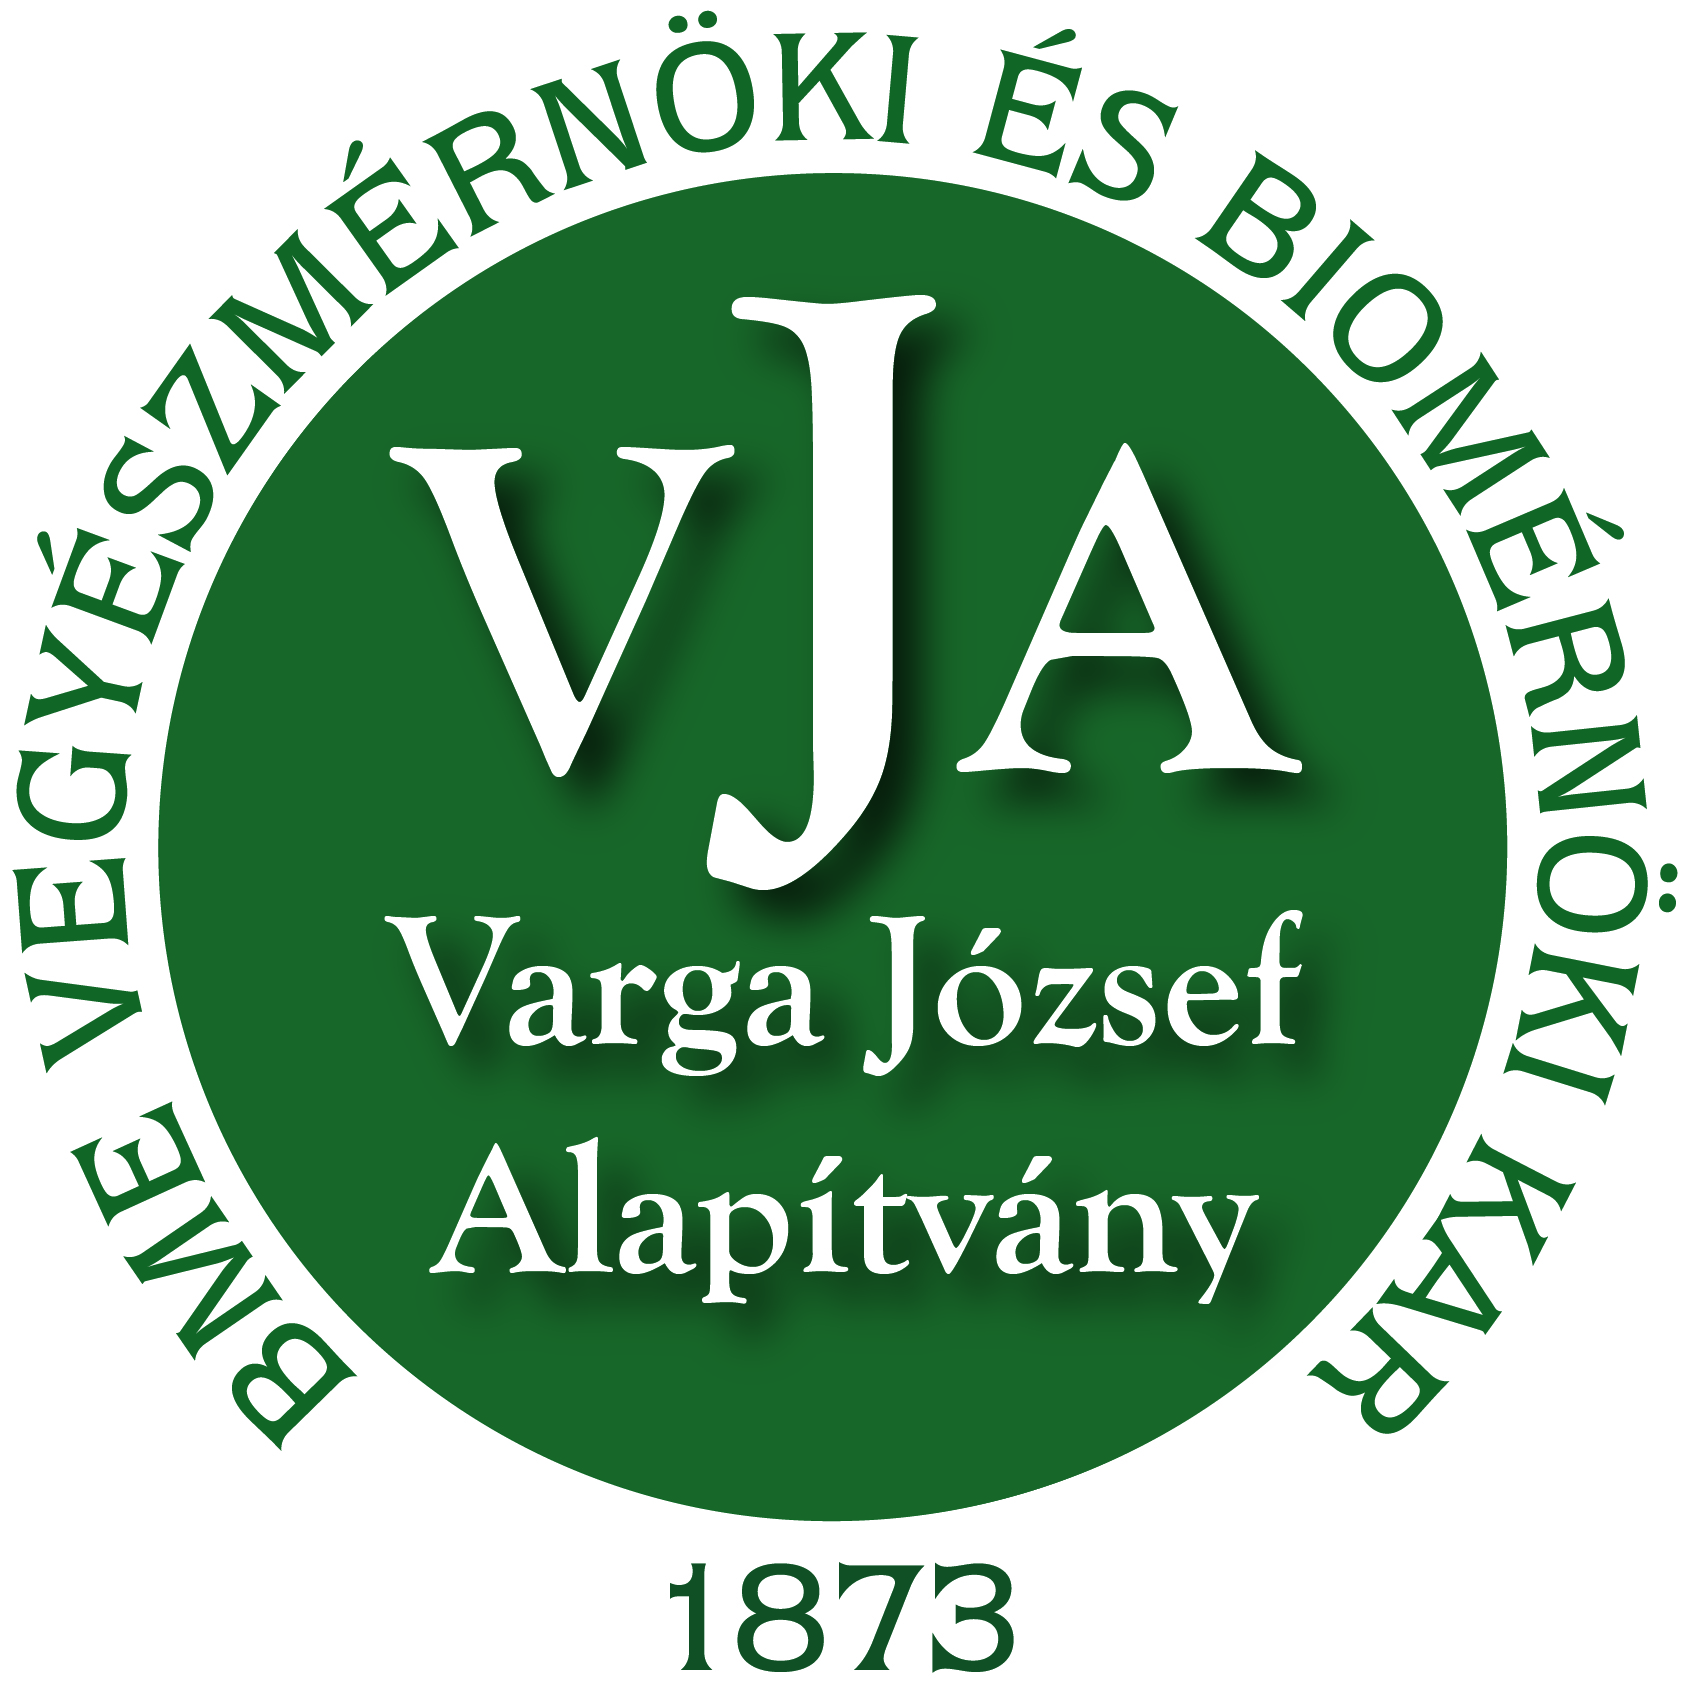 Varga József Alapítvány